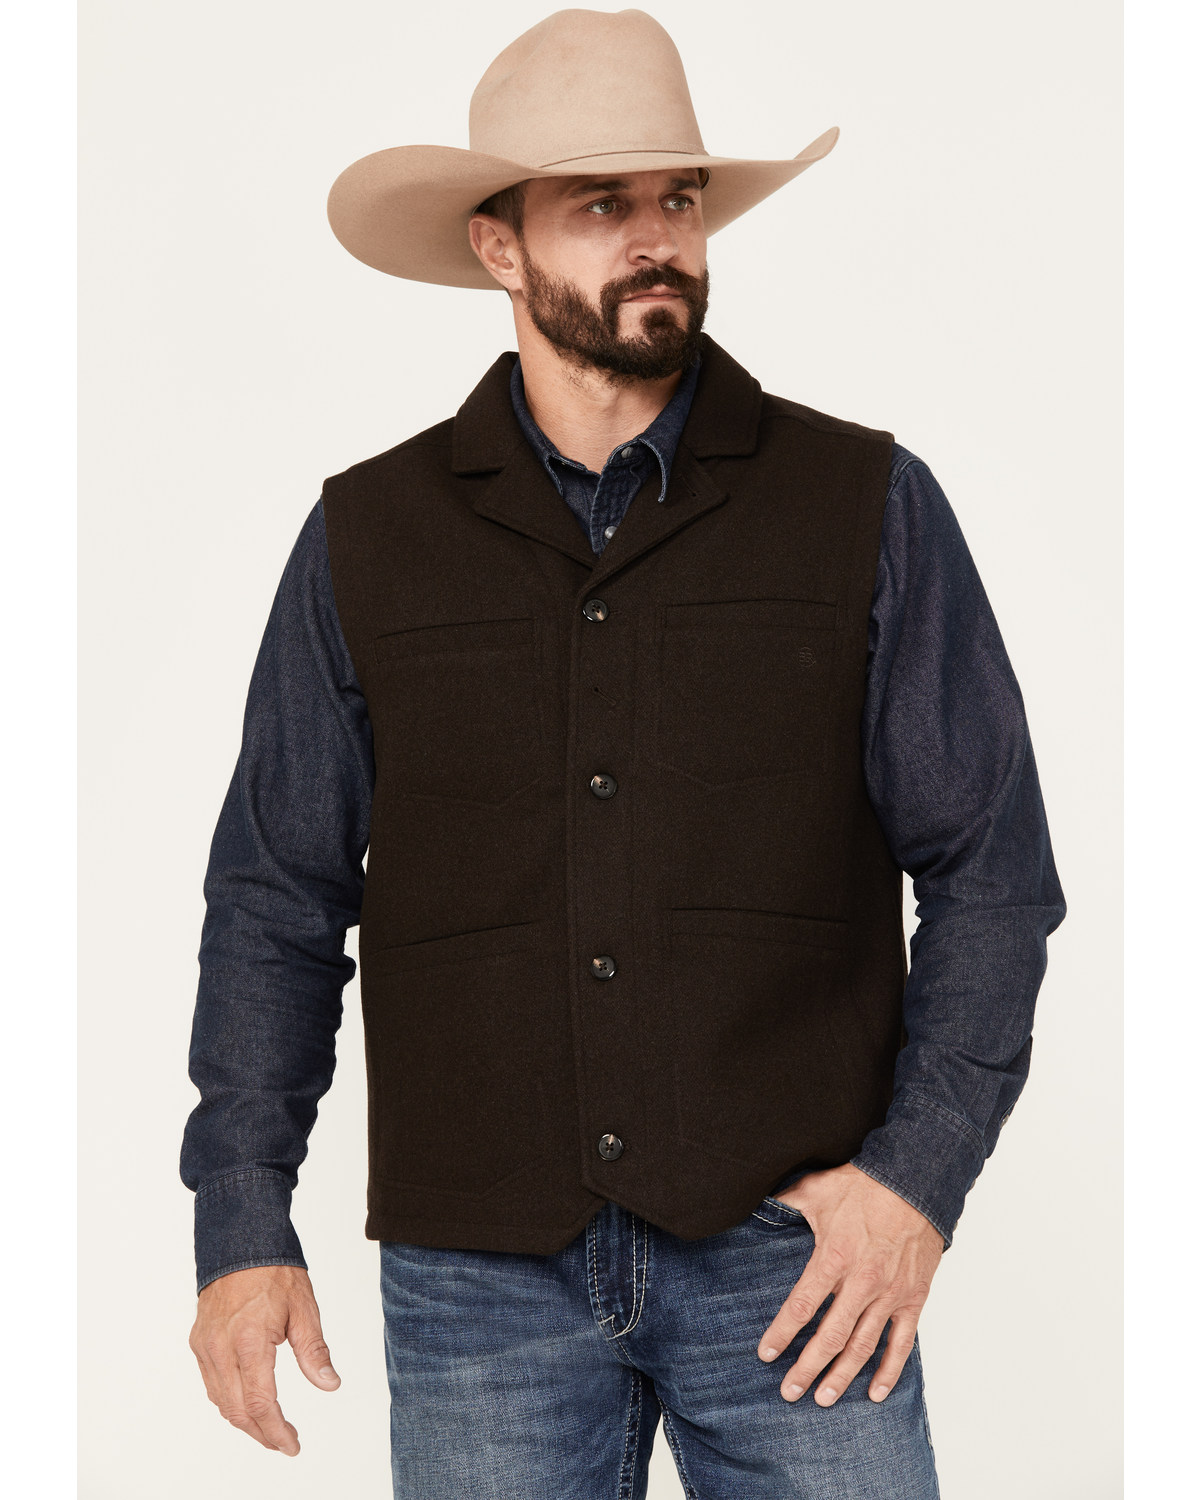 Blue Ranchwear Men's Wool Mackinaw Vest